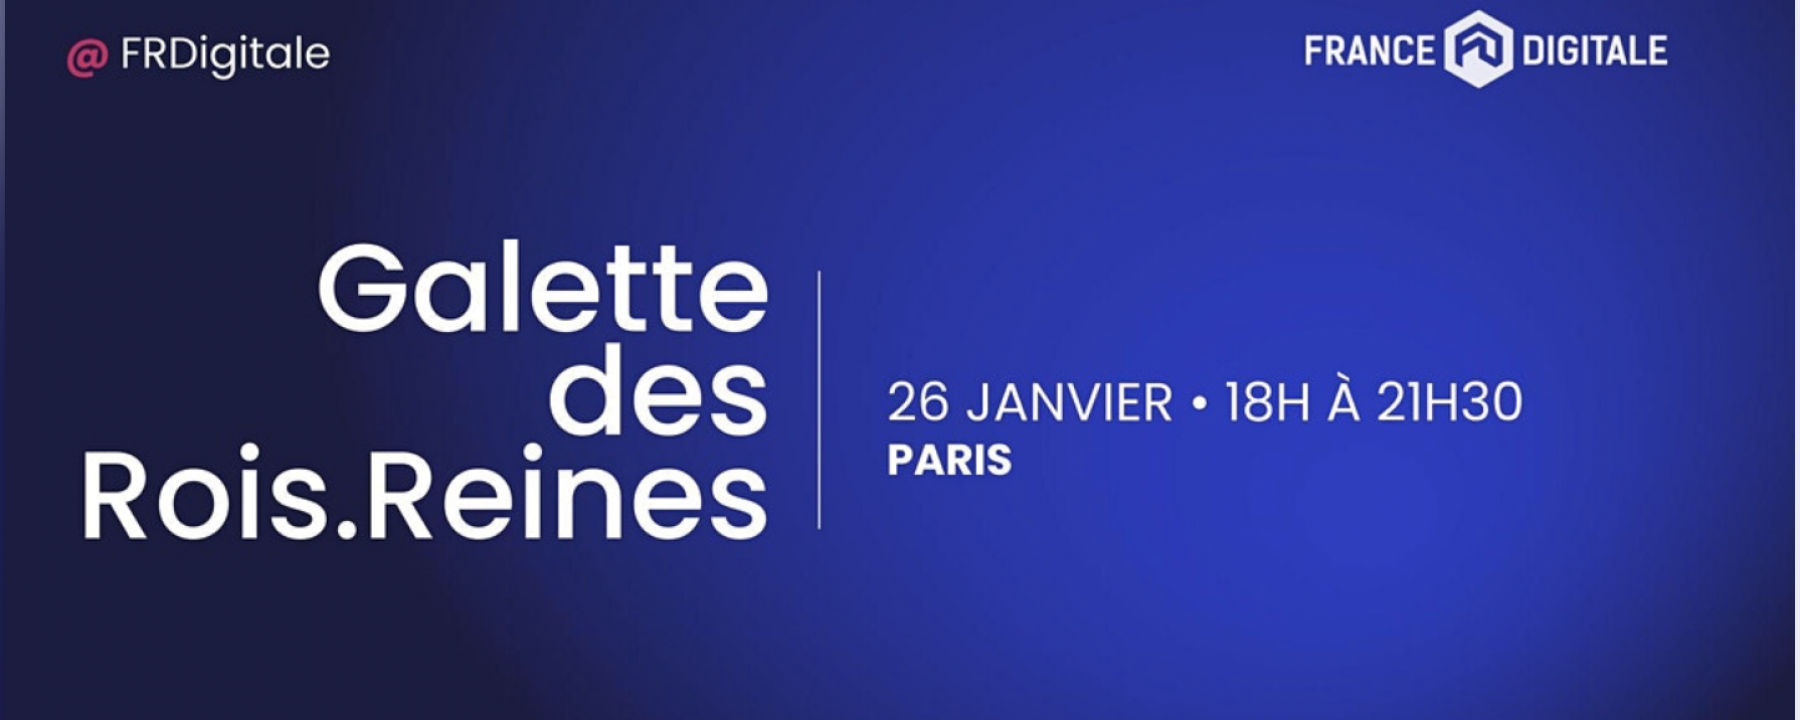 Galette des rois.reines 2021 by France Digitale le 26 janvier